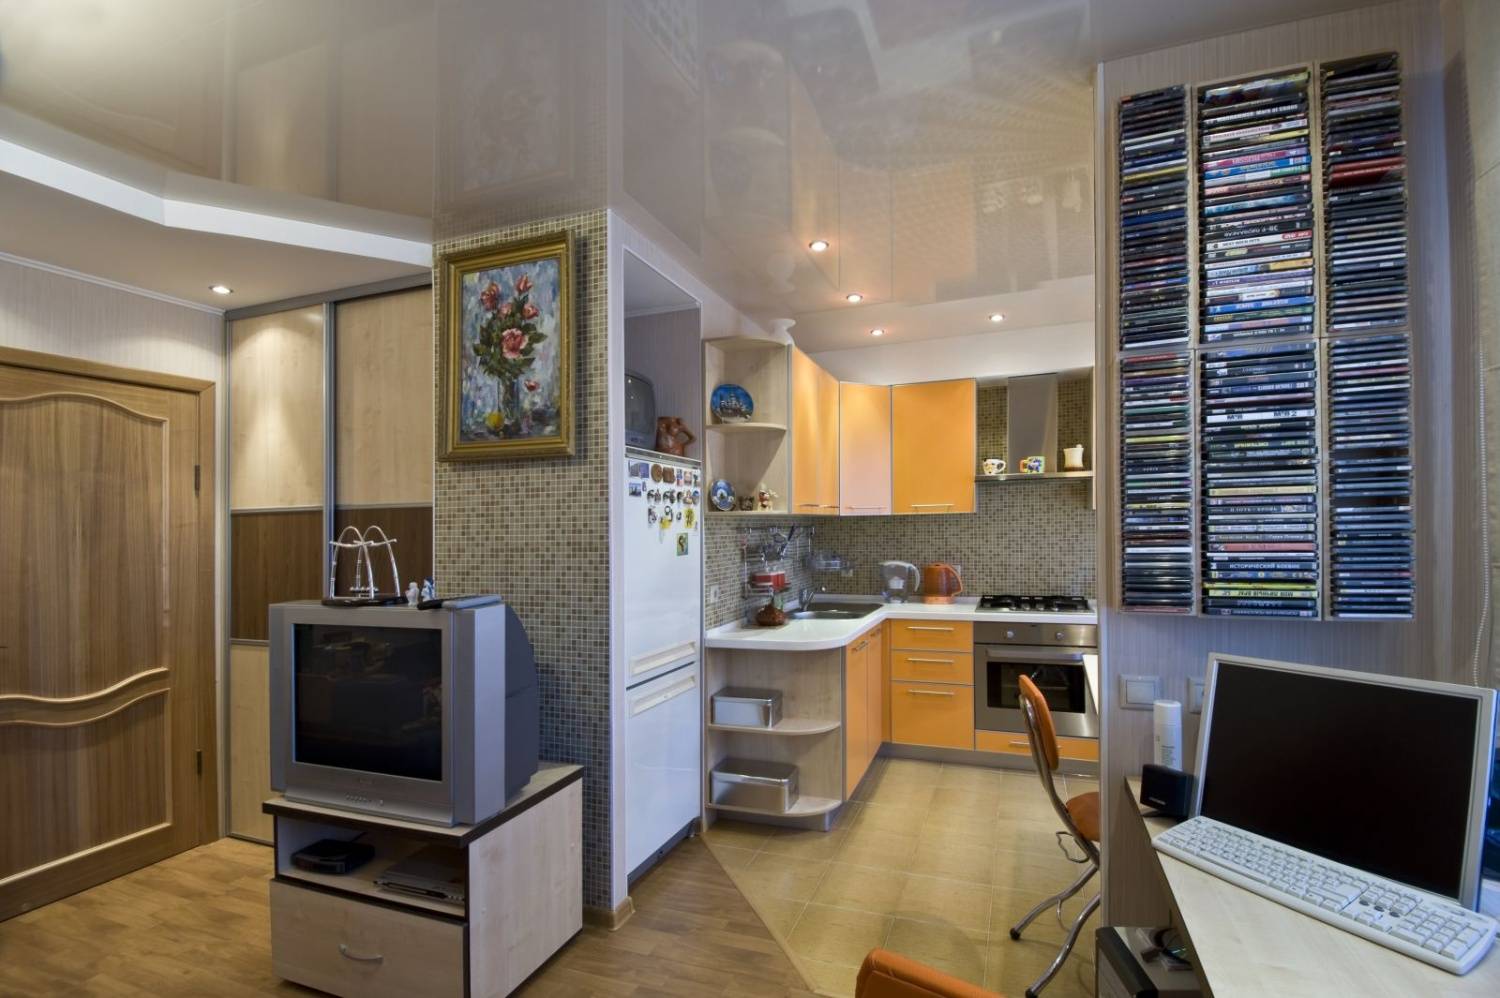 Дизайн и планировка кухни, совмещенной с гостиной в двушке-хрущевке